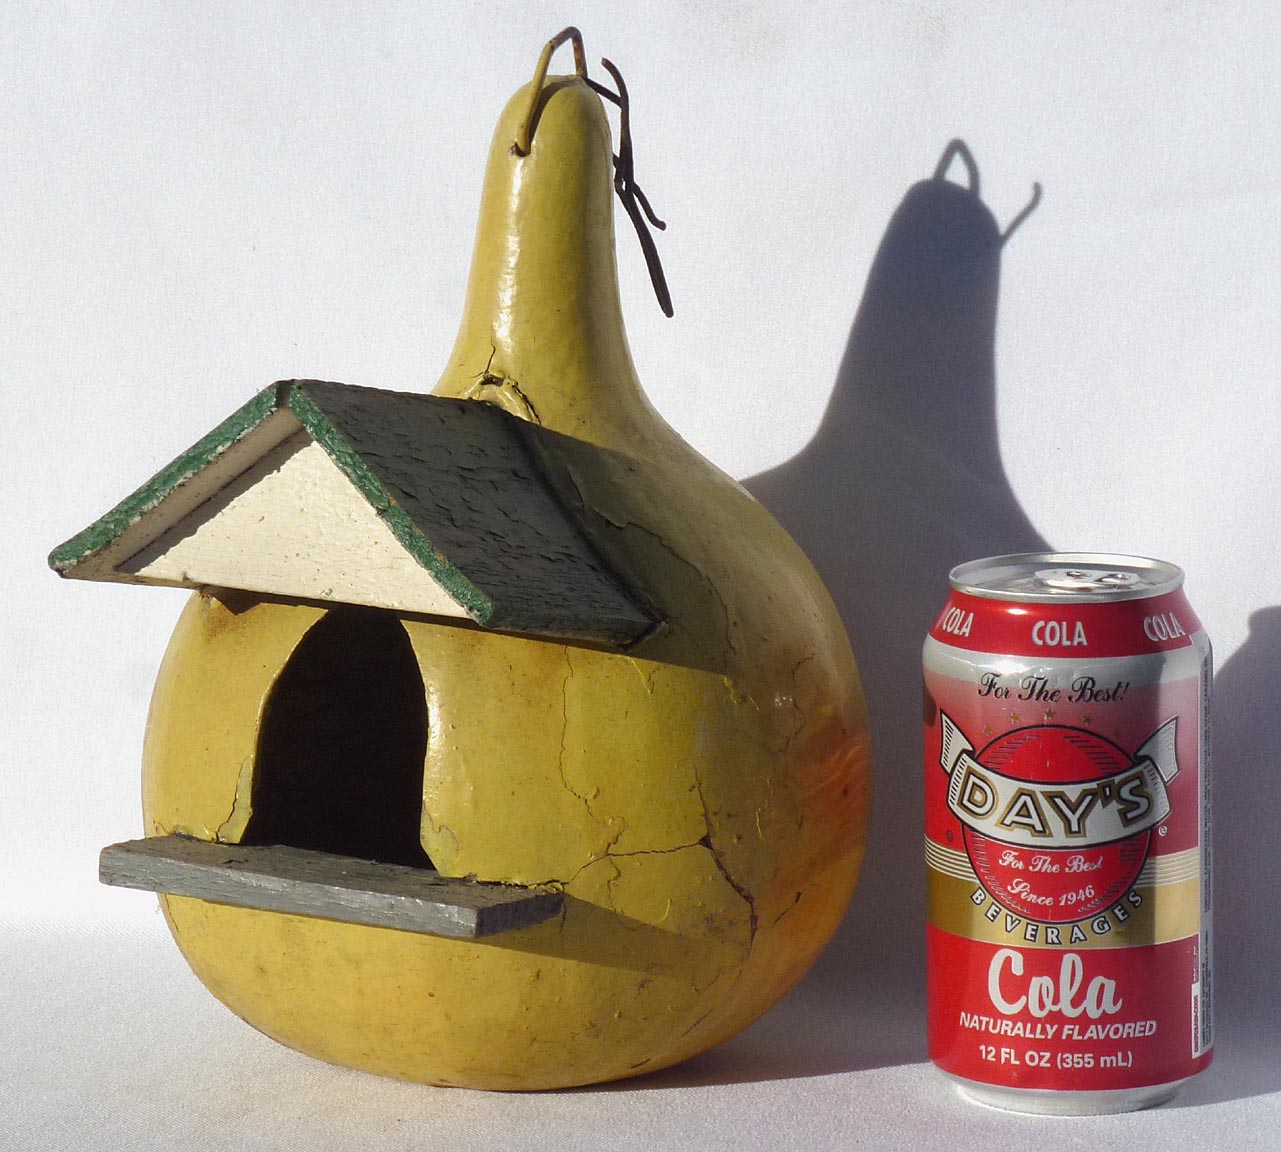 Gourd birdhouse